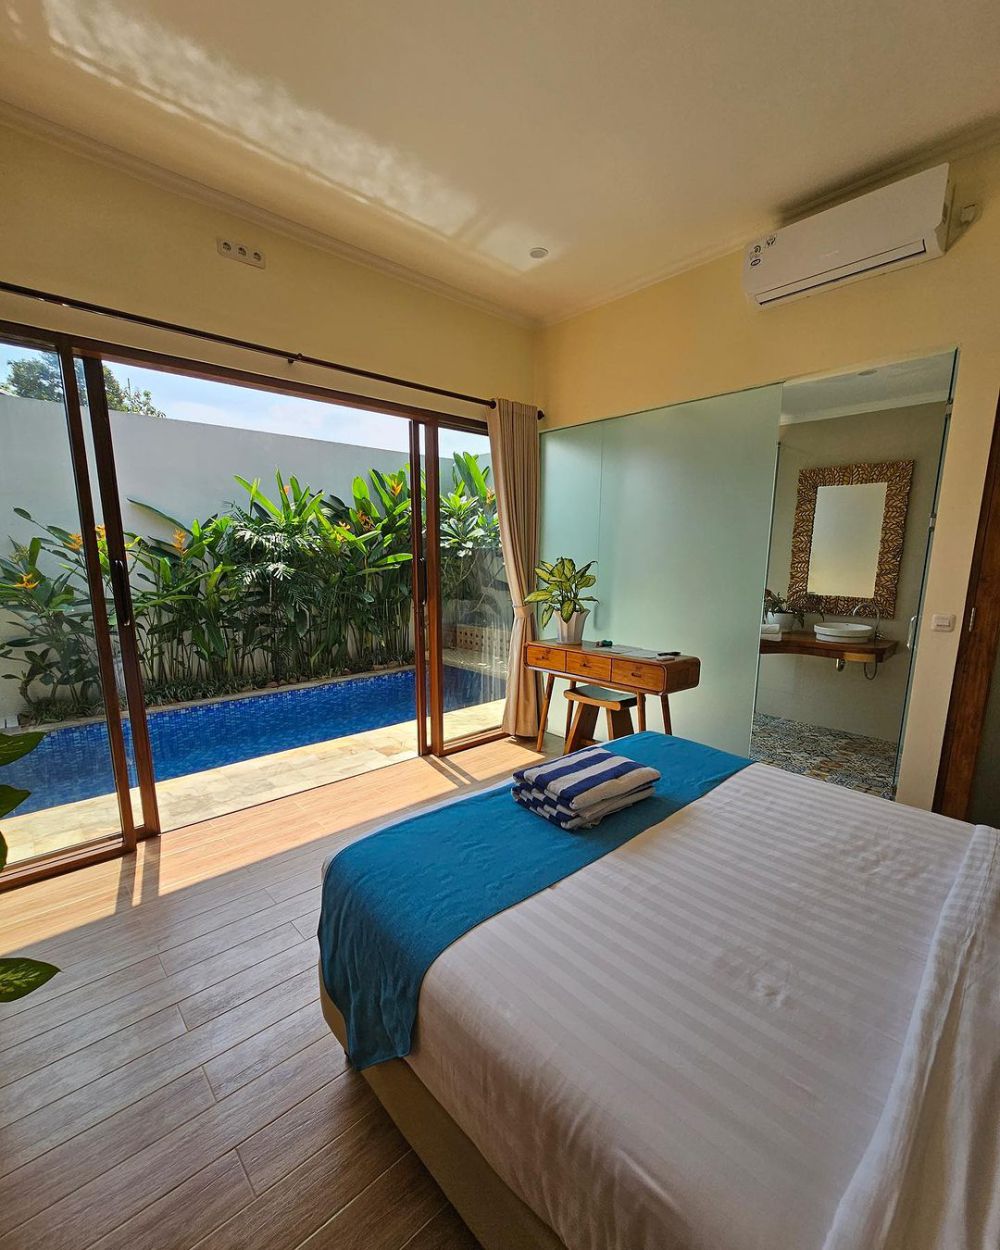 10 Potret Jepara Garden Resort, Resort di Jepara dengan Private Pool